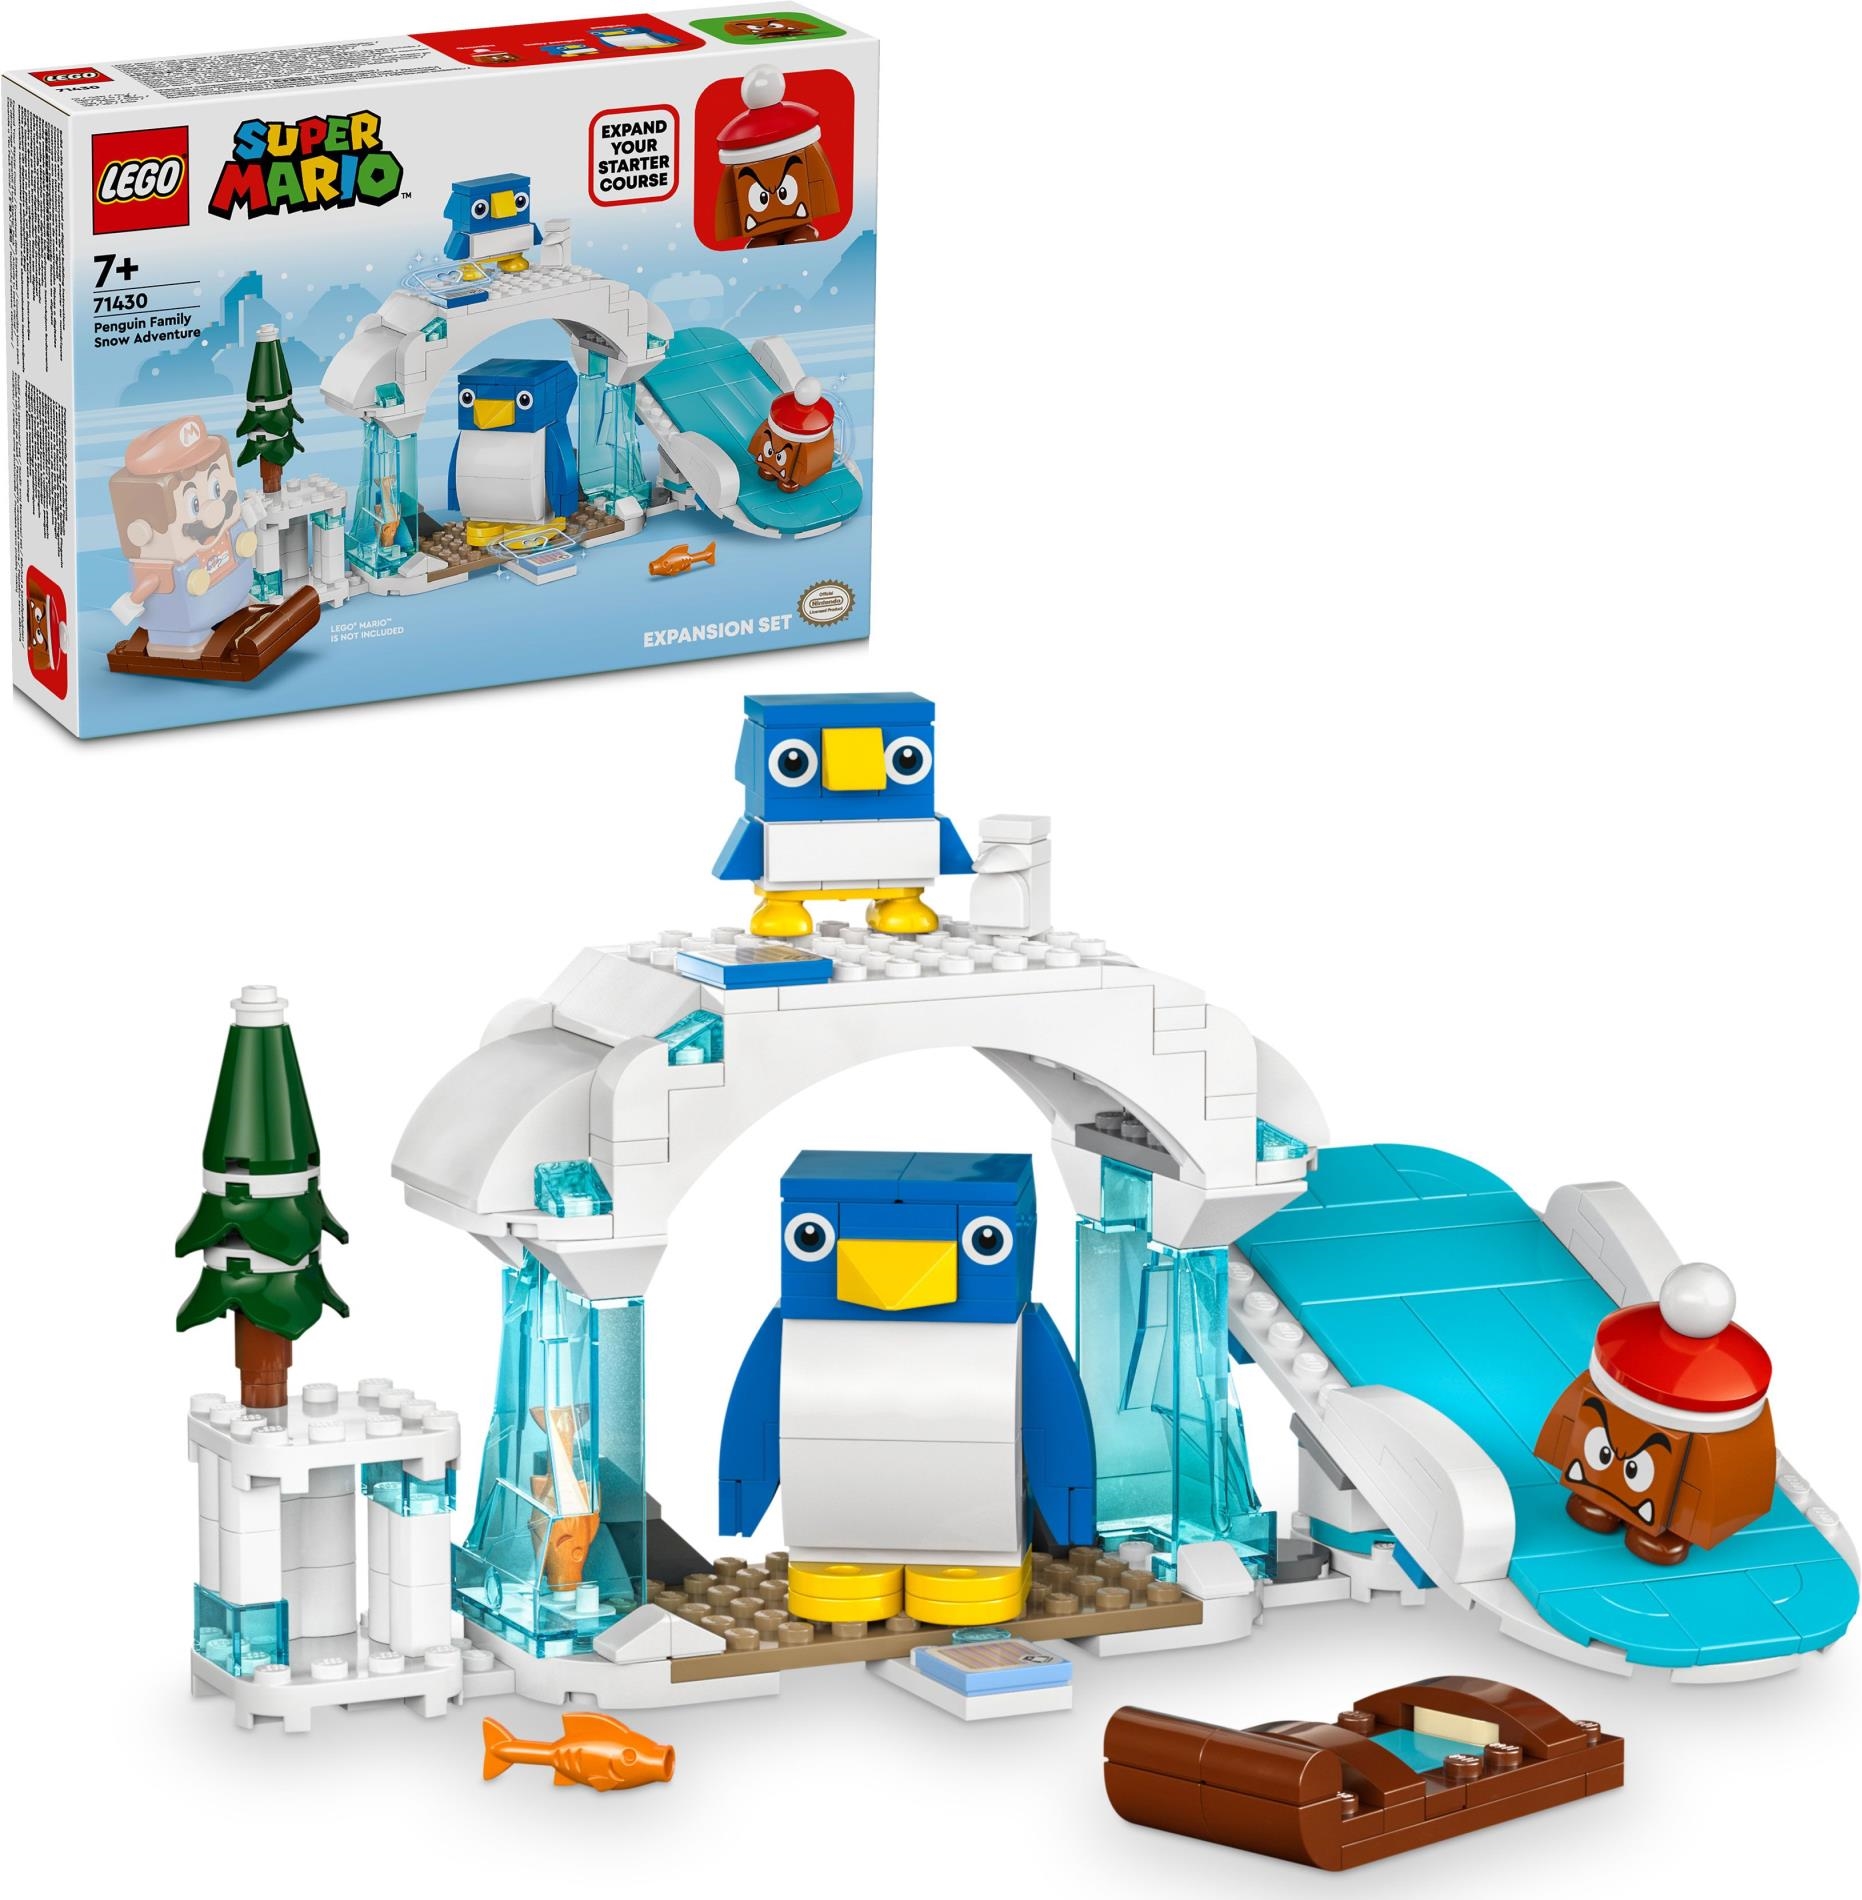 Lego: 71430 - Super Mario - Pack Di Espansione La Settimana Bianca Della Famiglia Pinguotto